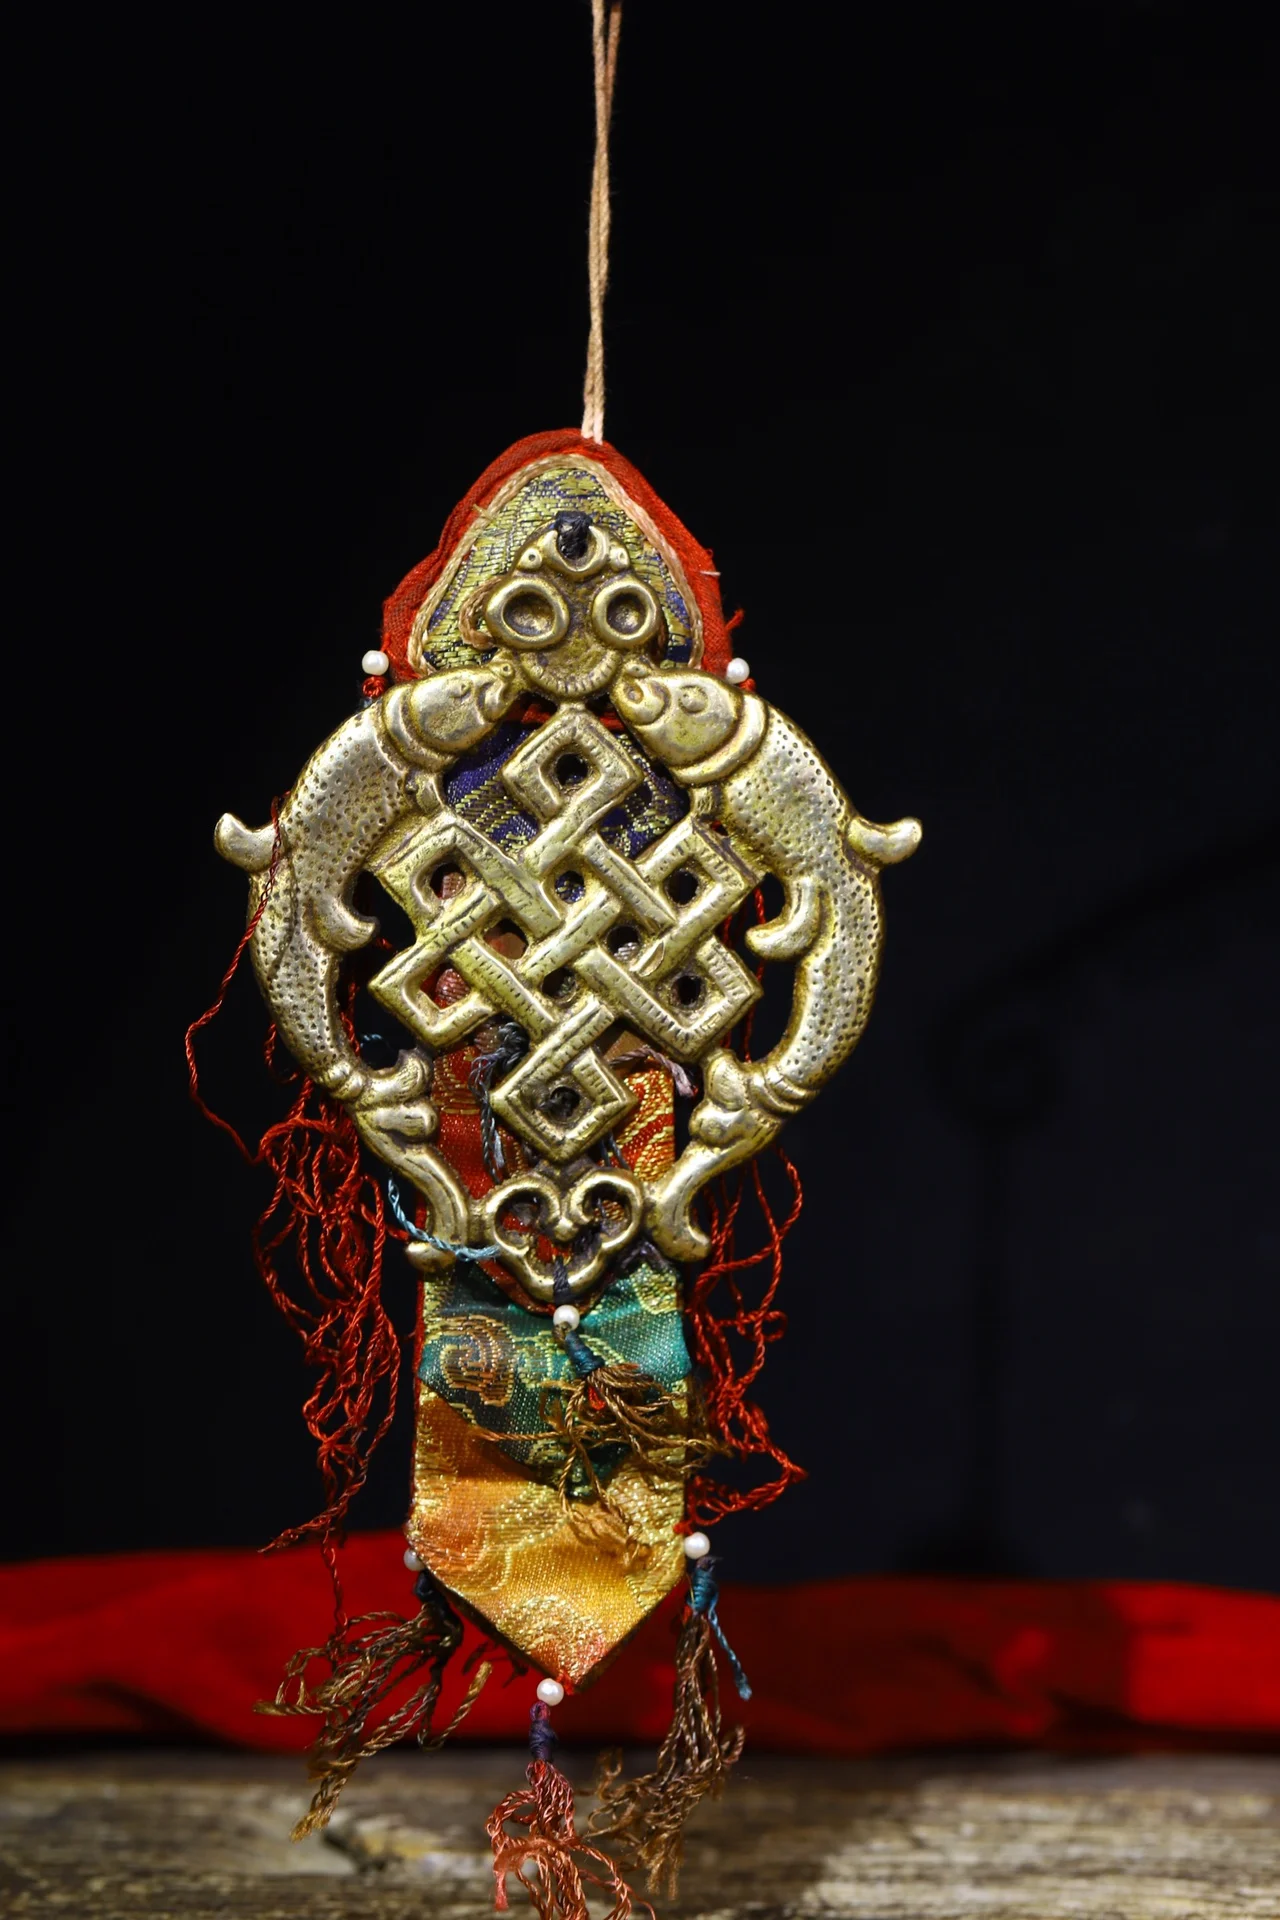 

Статуя из тибетской бронзы для молитвы, украшение для дома 10 дюймов в буддистском стиле, с флагами, отгоняет злых духов